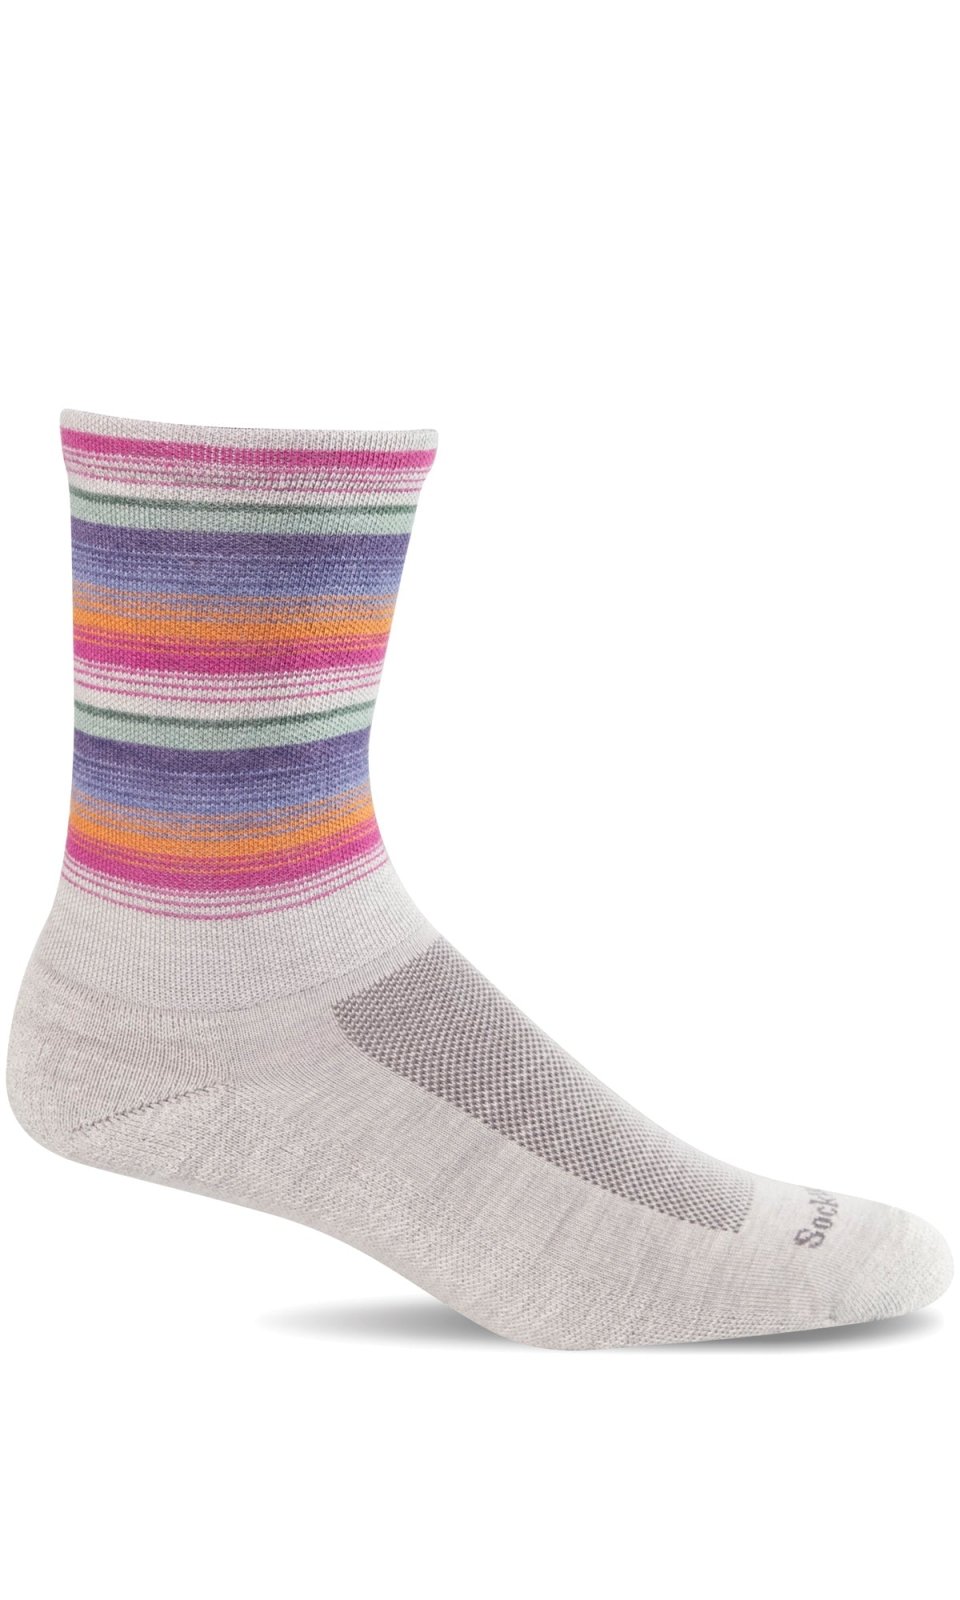 Sockwell Desert Stripe Essential Comfort Socks (Women's)